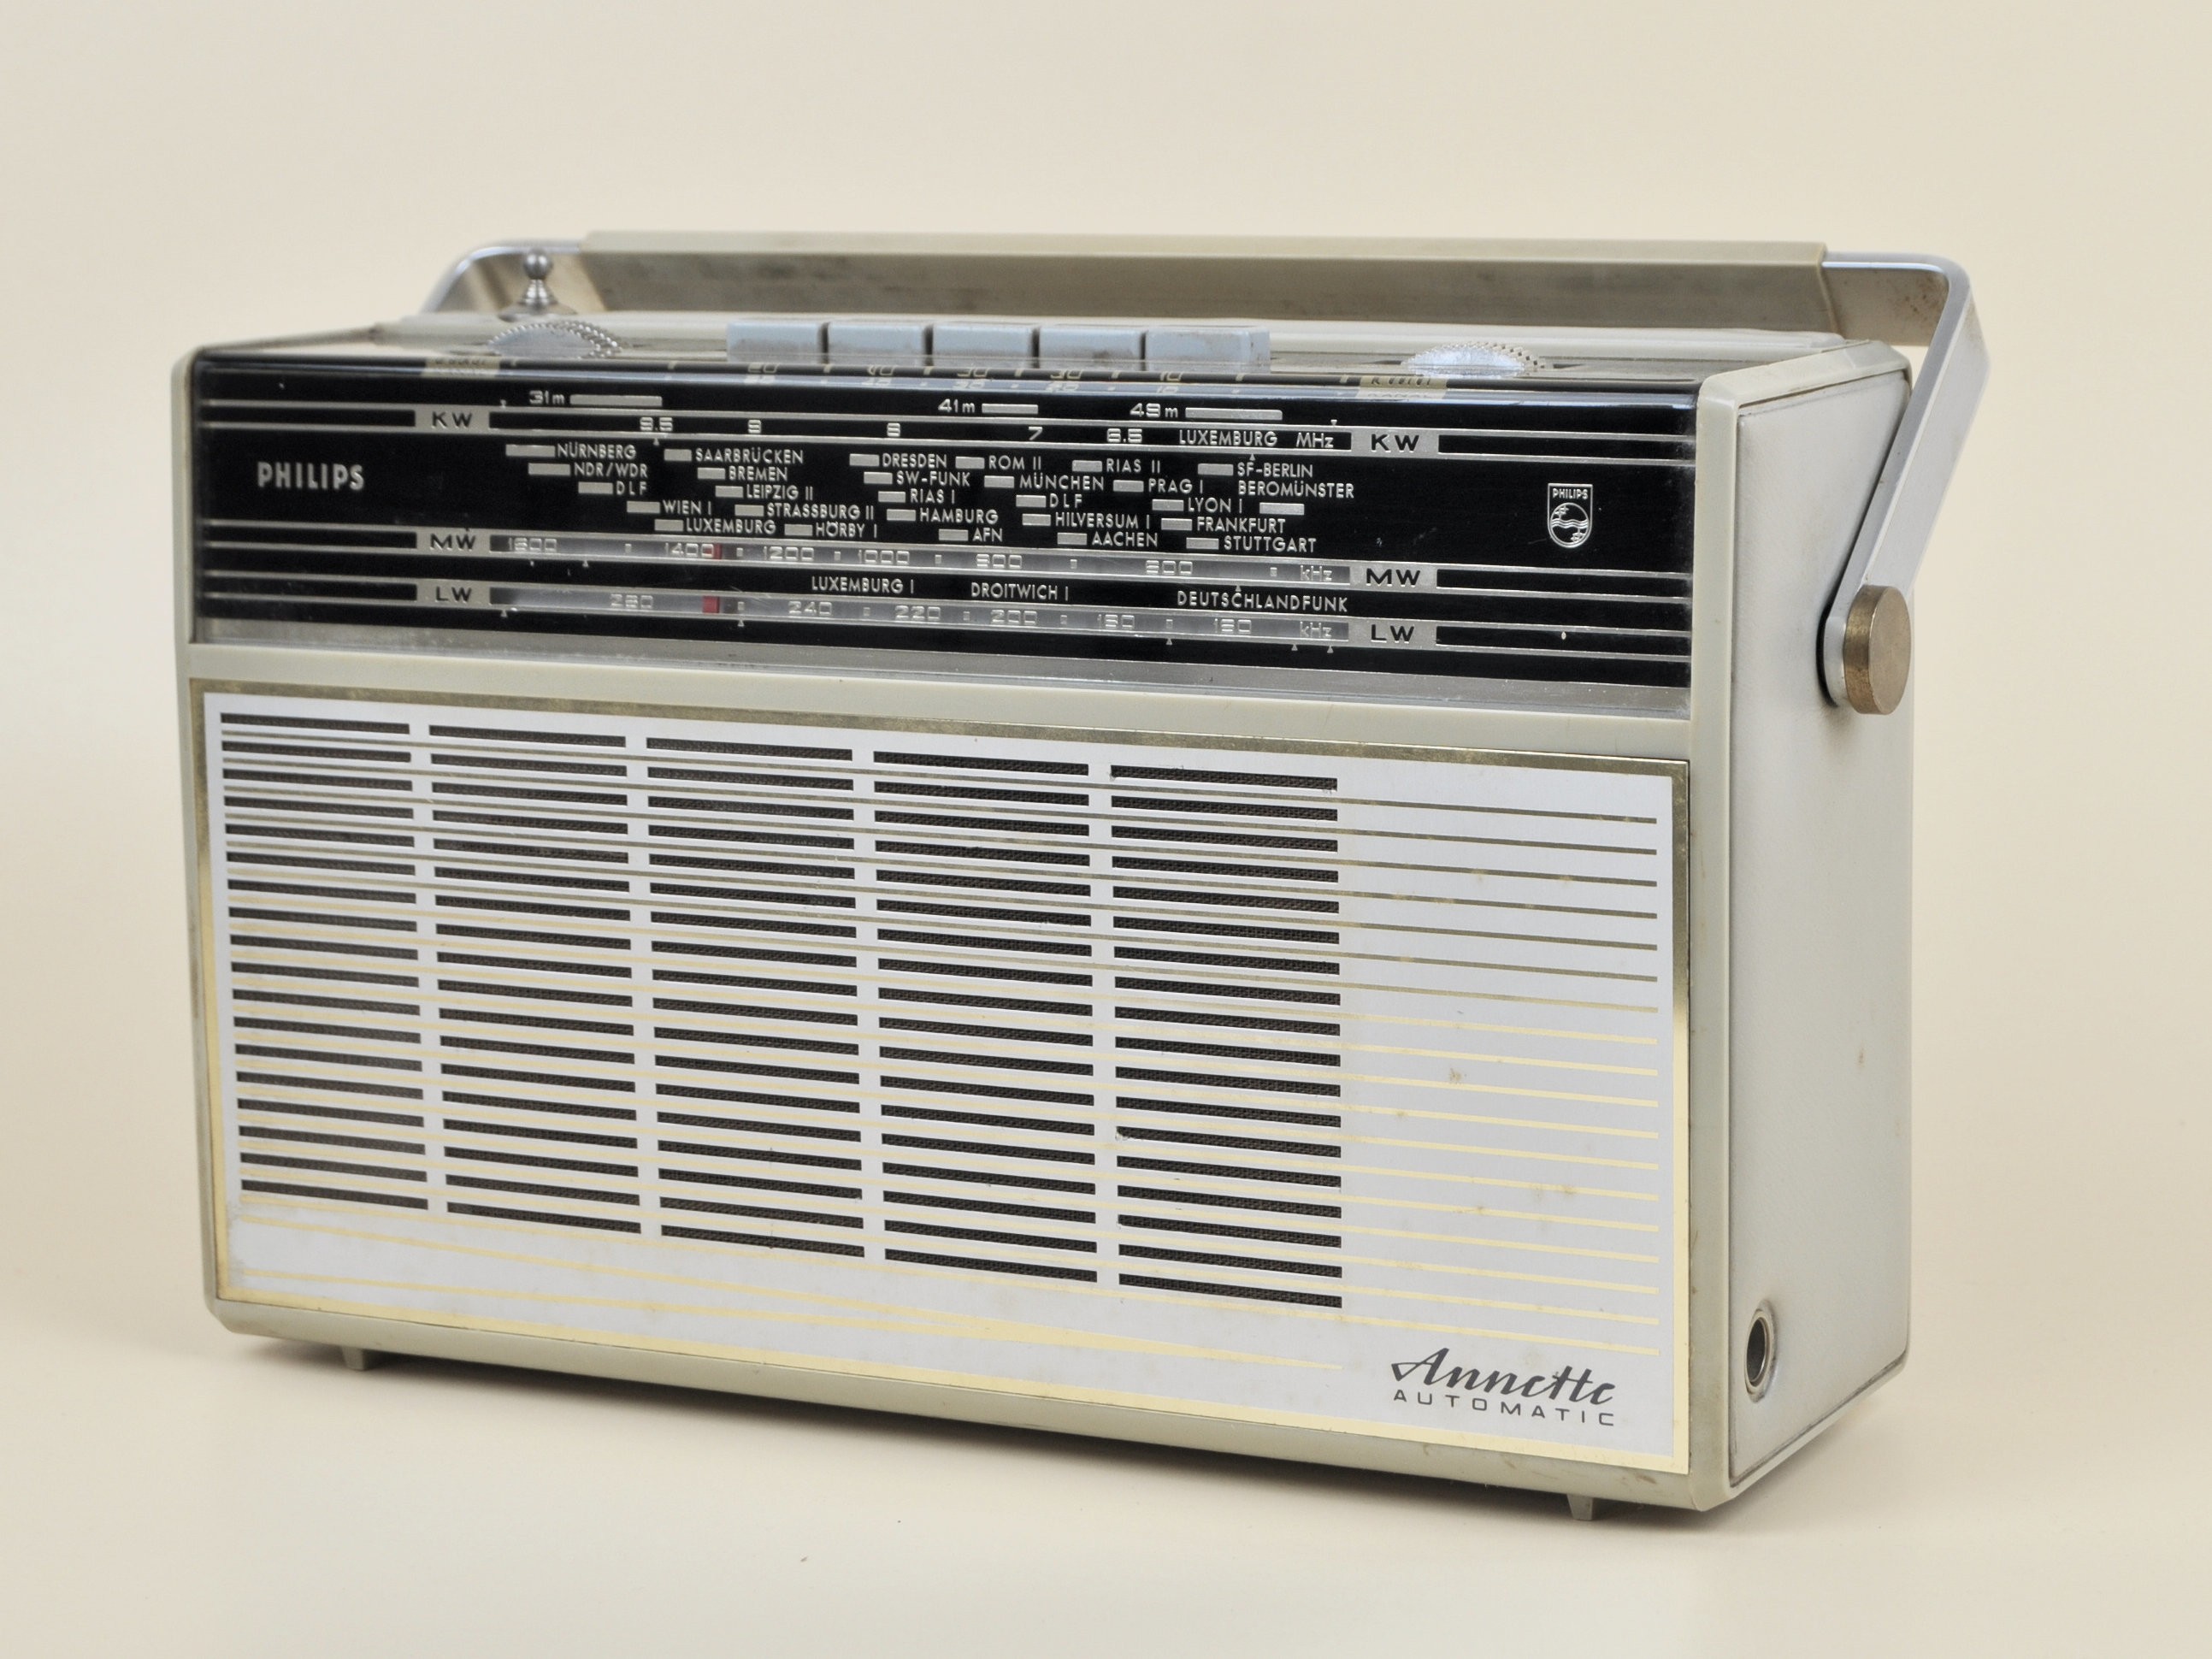 Kofferradio Philips	Annette Automatic L5D52T (Volkskunde- und Freilichtmuseum Roscheider Hof CC0)